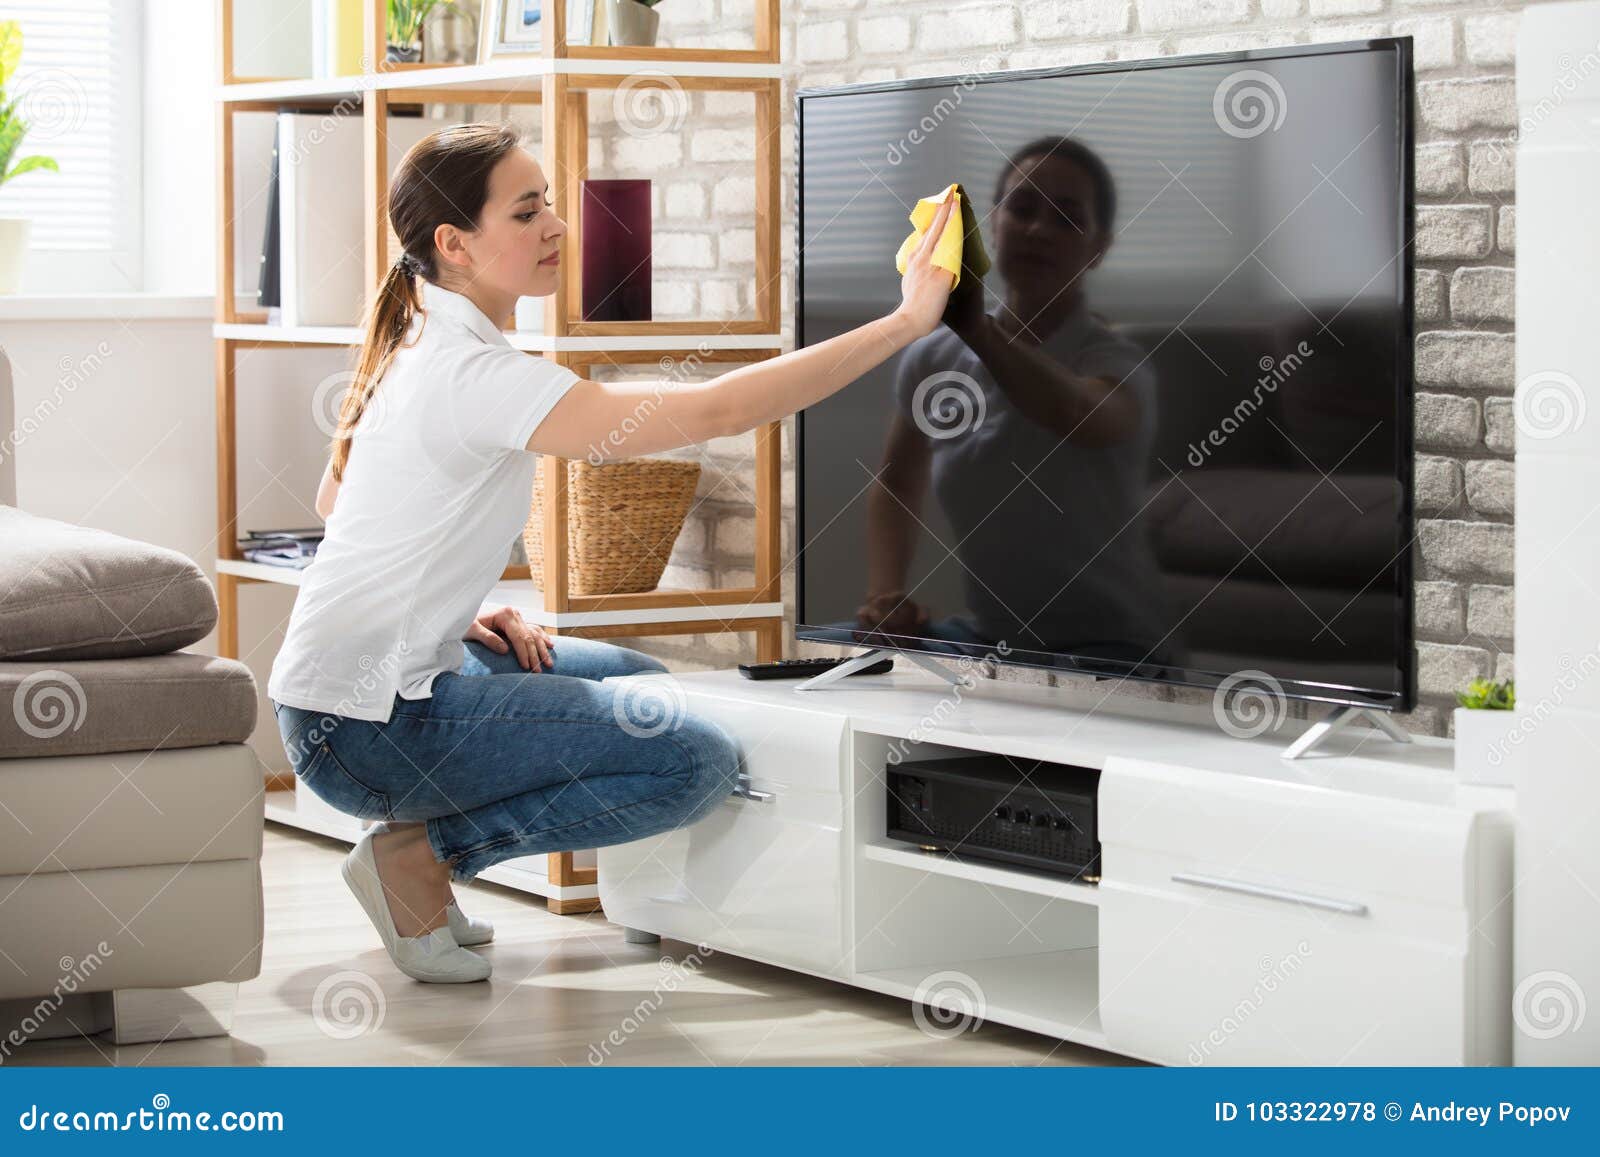 Cómo limpiar el televisor - Guia paso a paso